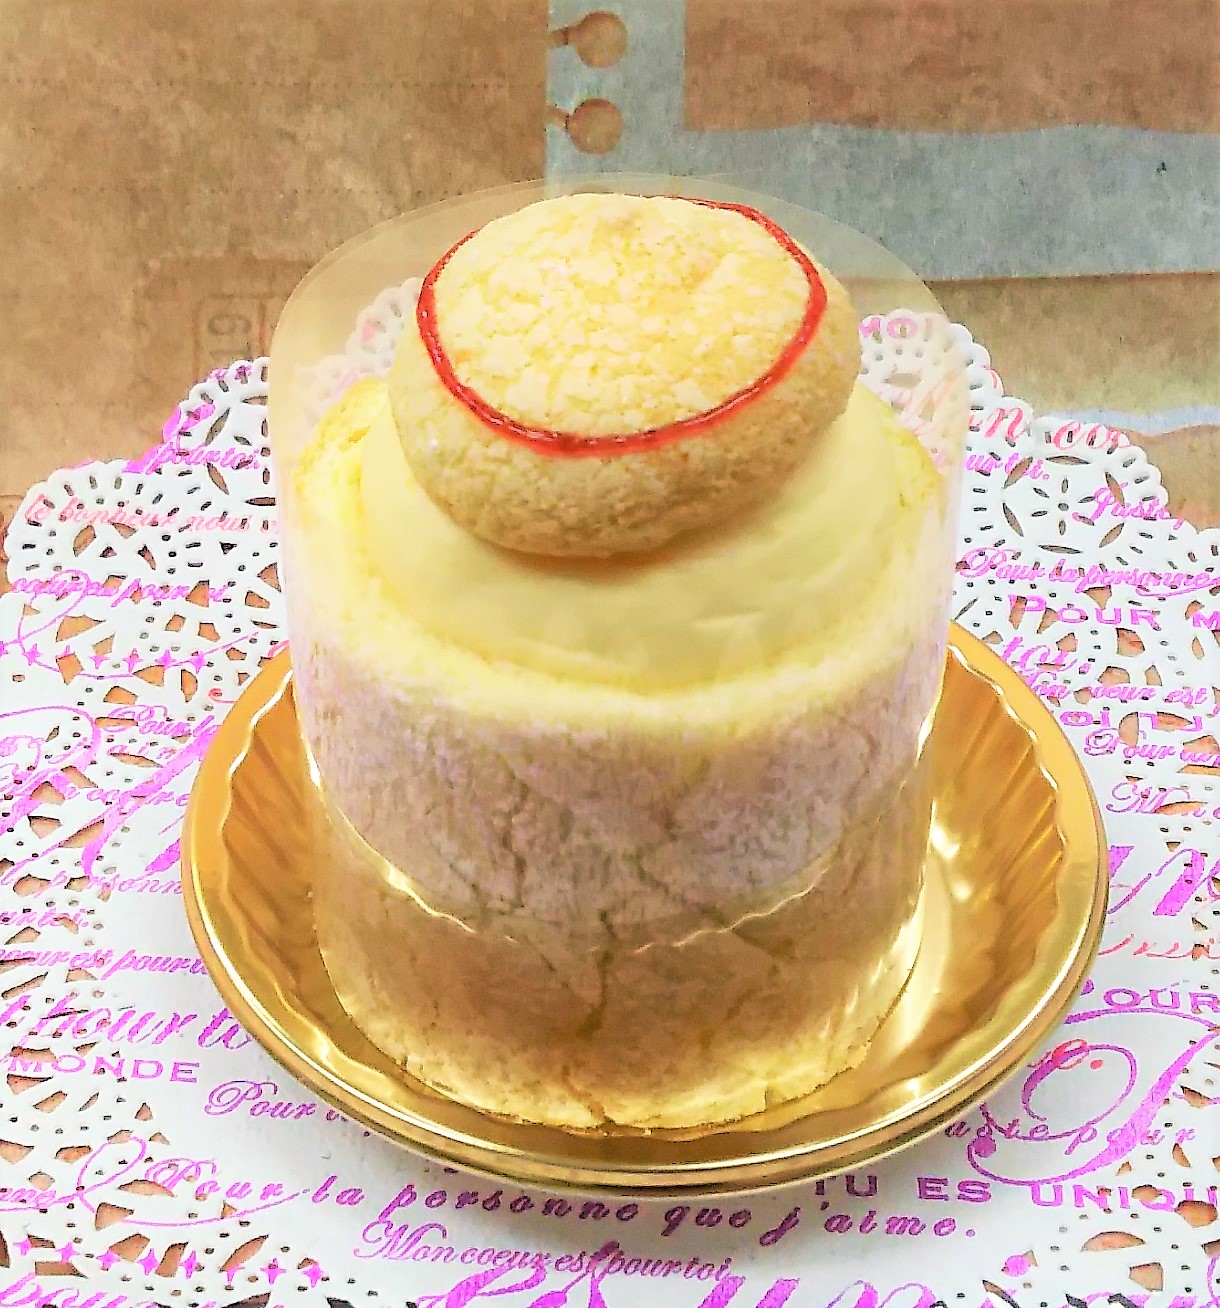 ケーキと焼き菓子の由香里絵 インスタ映えするケーキ 誕生日ケーキ モンブラン ショートケーキが人気 青梅 羽村 瑞穂から